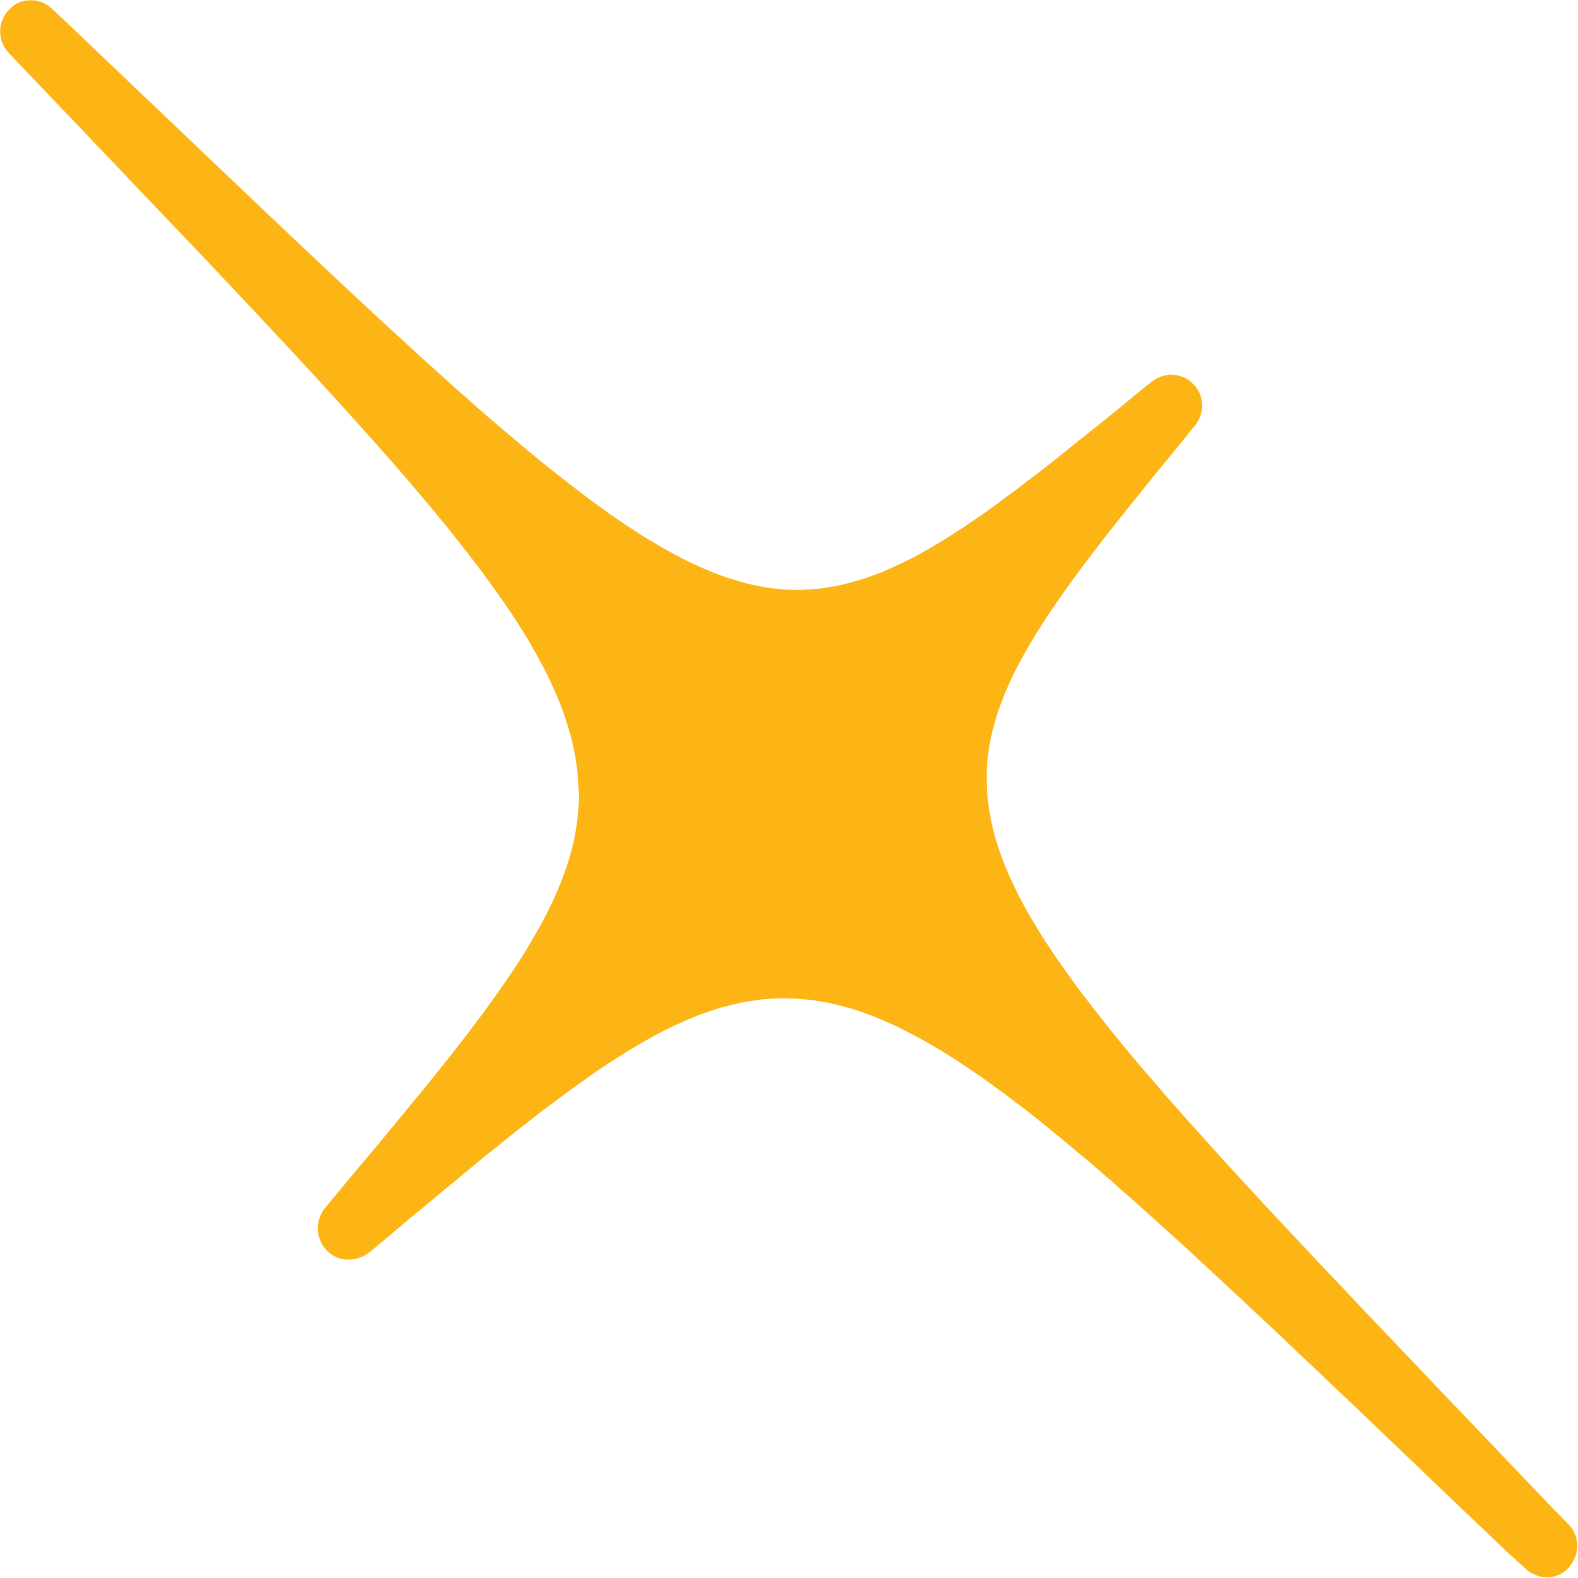 Nexters logo (transparent PNG)